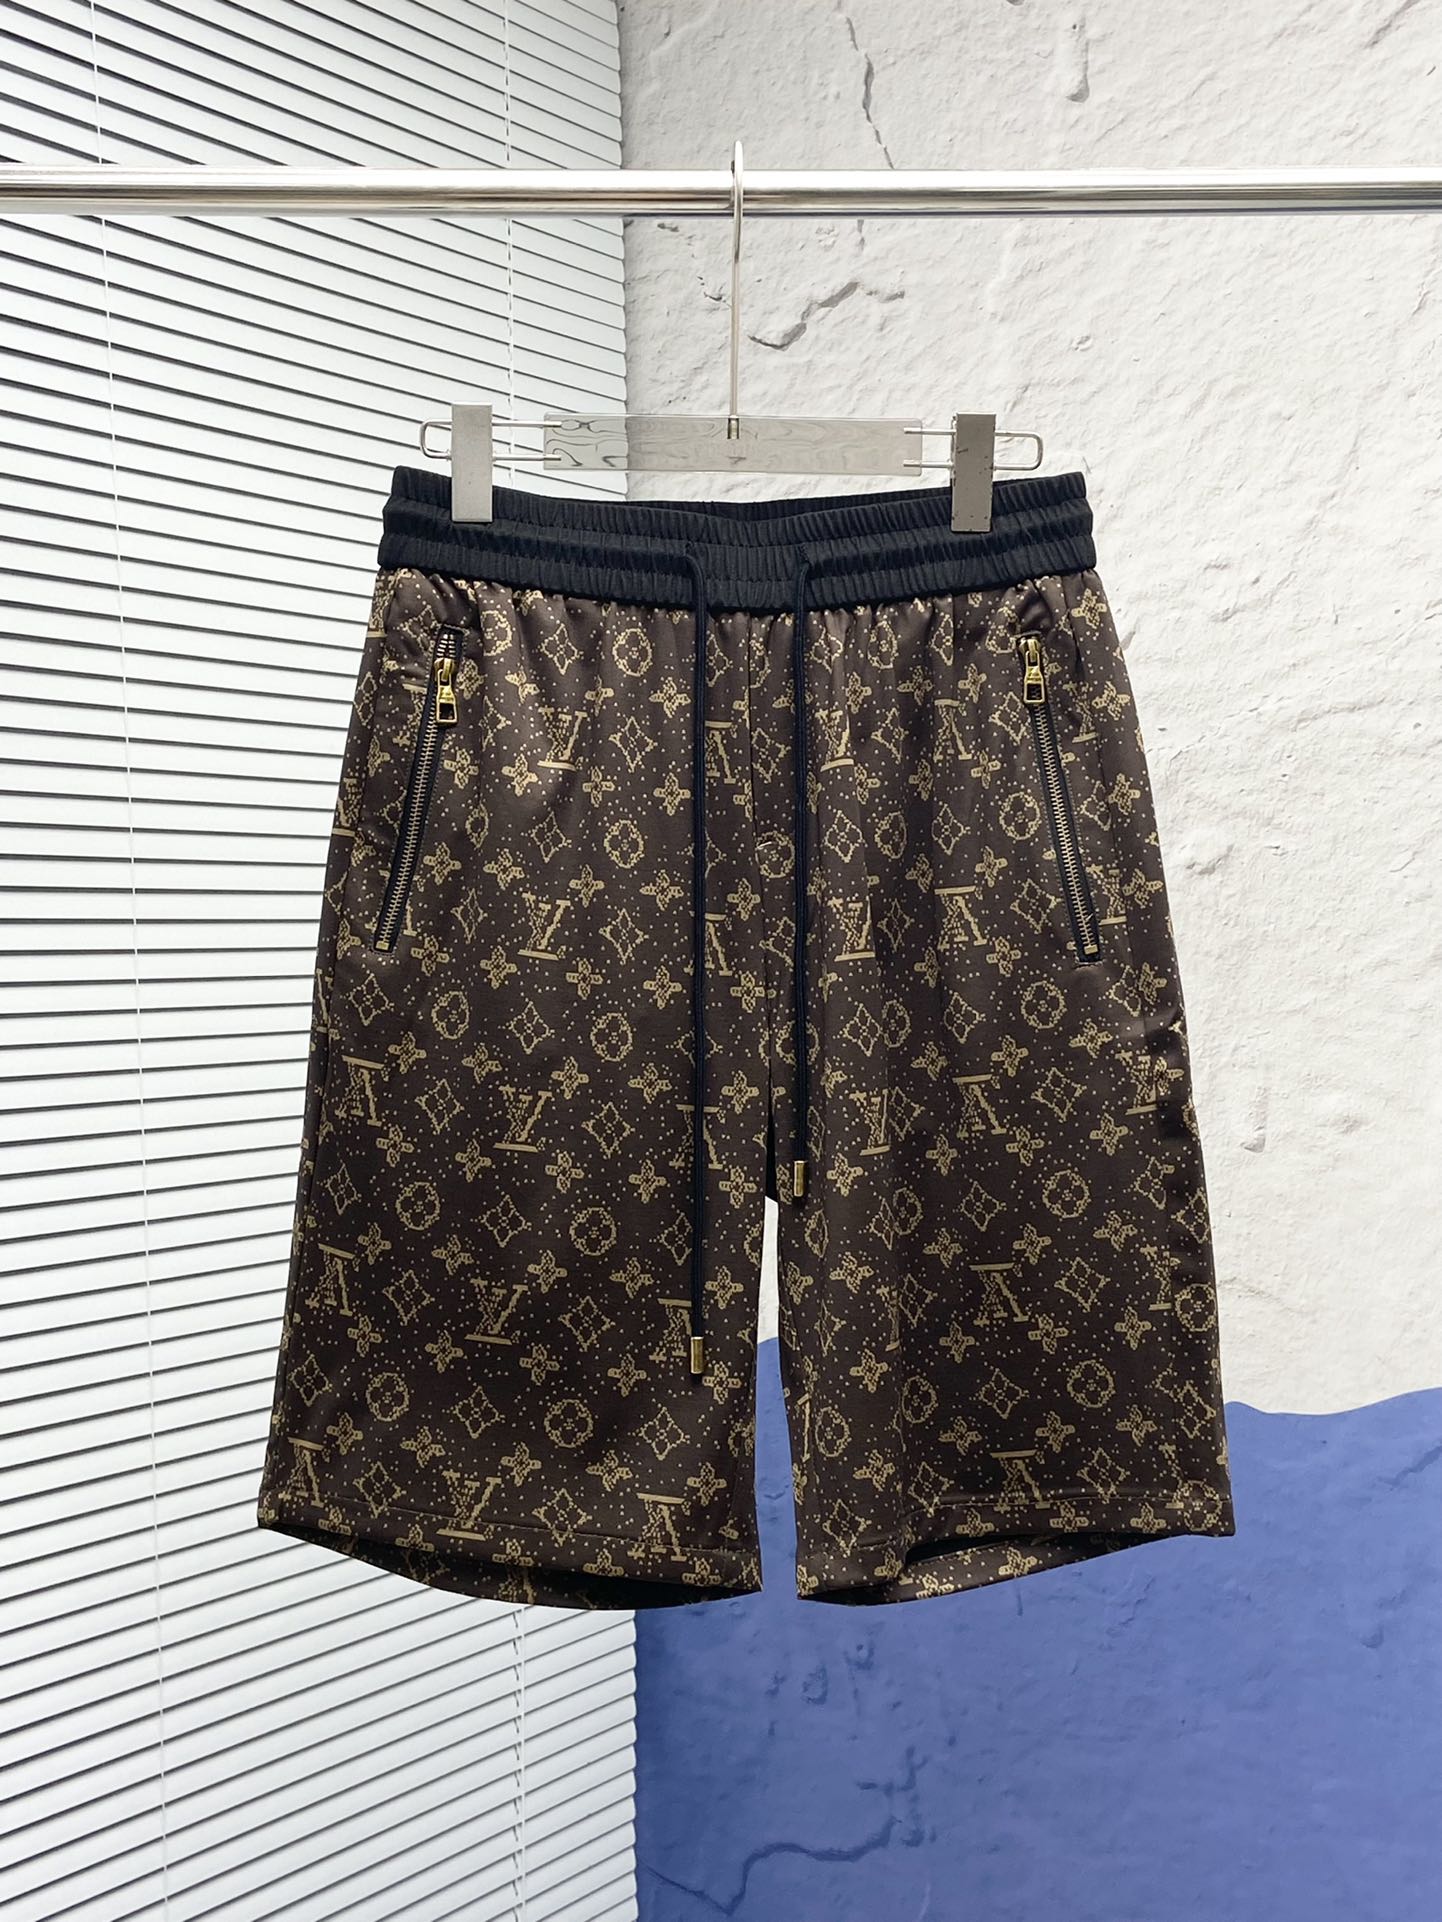 Designer Replica Louis Vuitton Clothing Shorts Men Summer Collection Casual